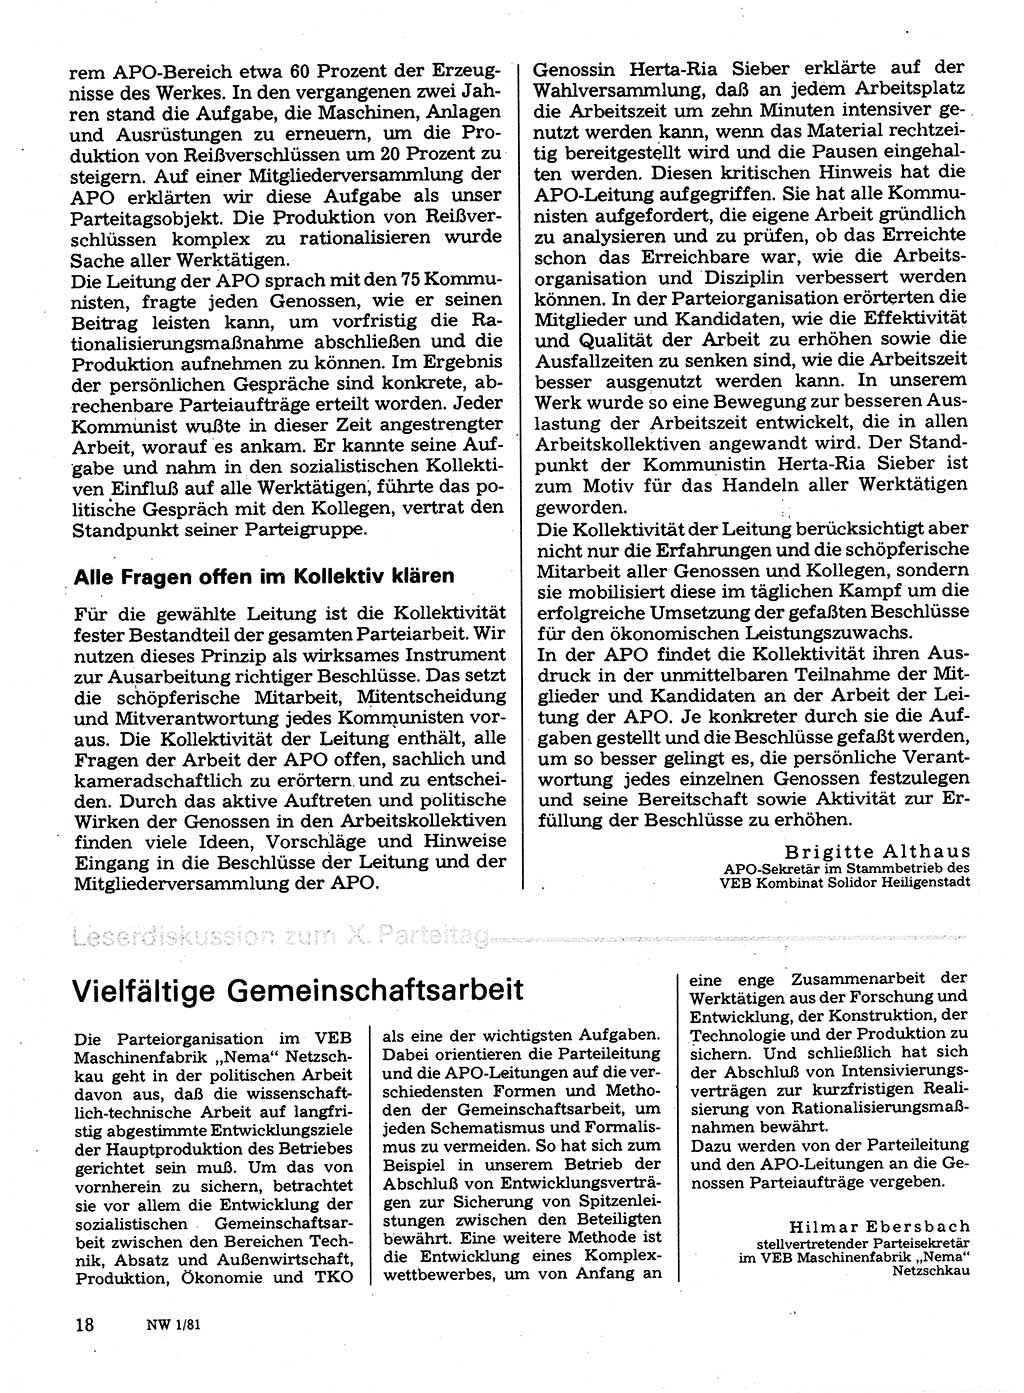 Neuer Weg (NW), Organ des Zentralkomitees (ZK) der SED (Sozialistische Einheitspartei Deutschlands) für Fragen des Parteilebens, 36. Jahrgang [Deutsche Demokratische Republik (DDR)] 1981, Seite 18 (NW ZK SED DDR 1981, S. 18)